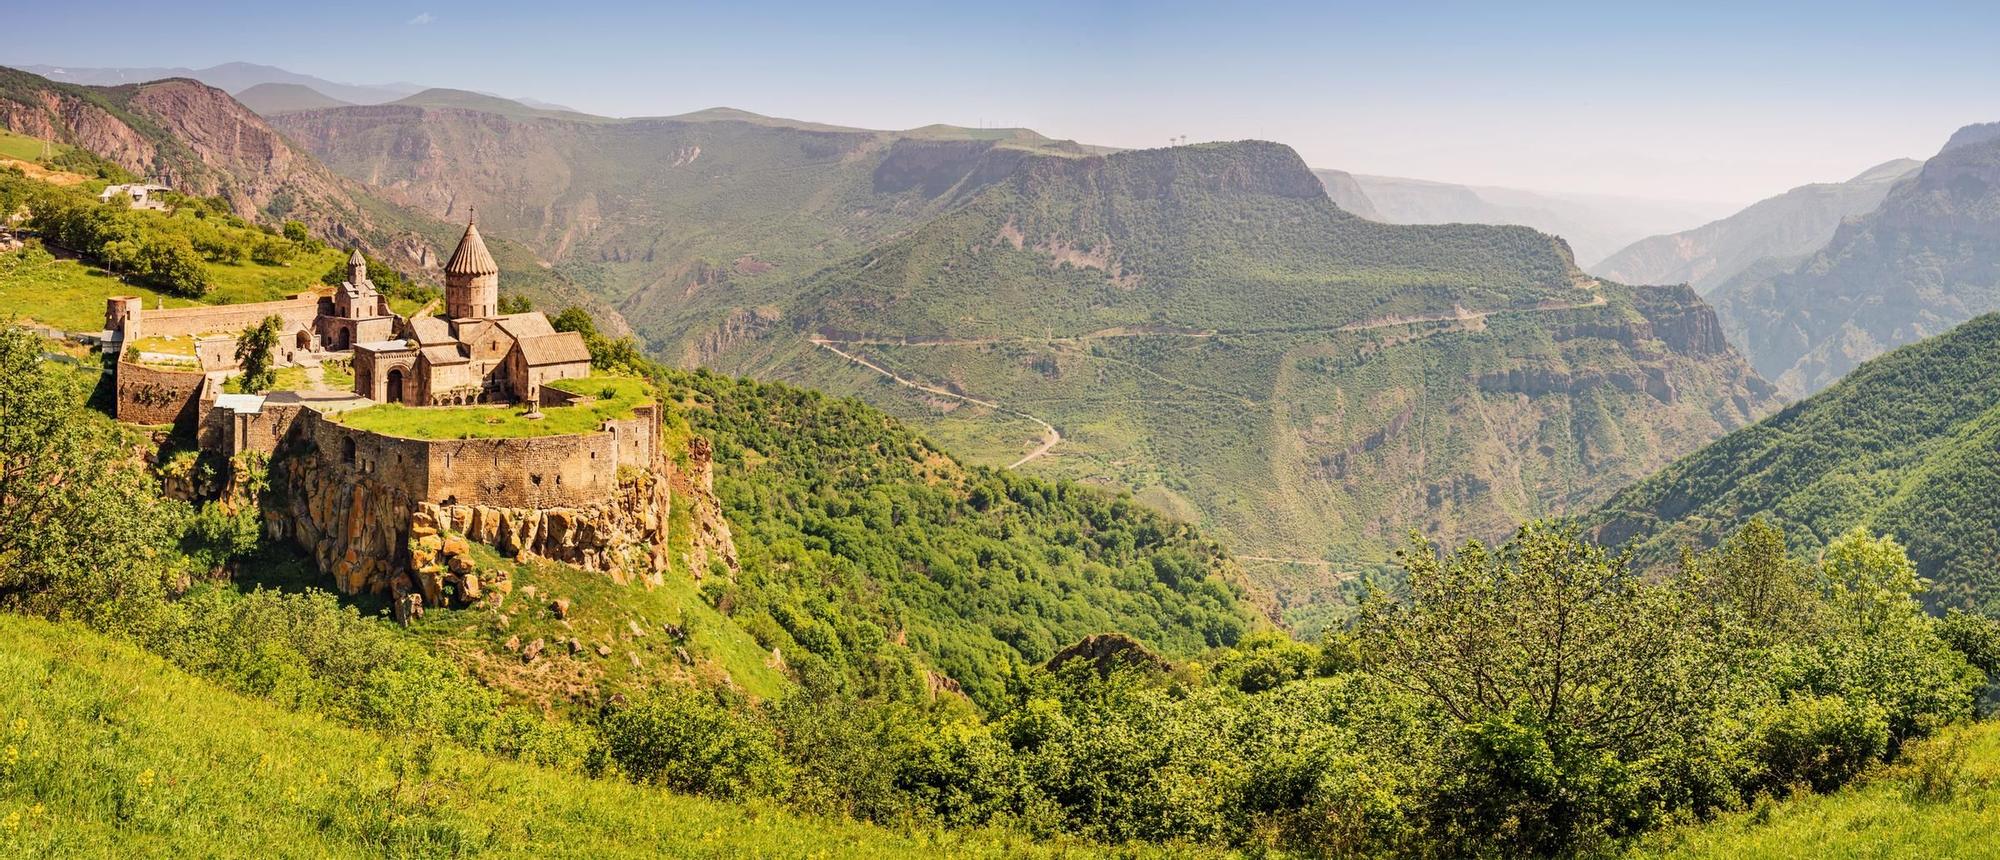 Por los valles y colinas de Armenia